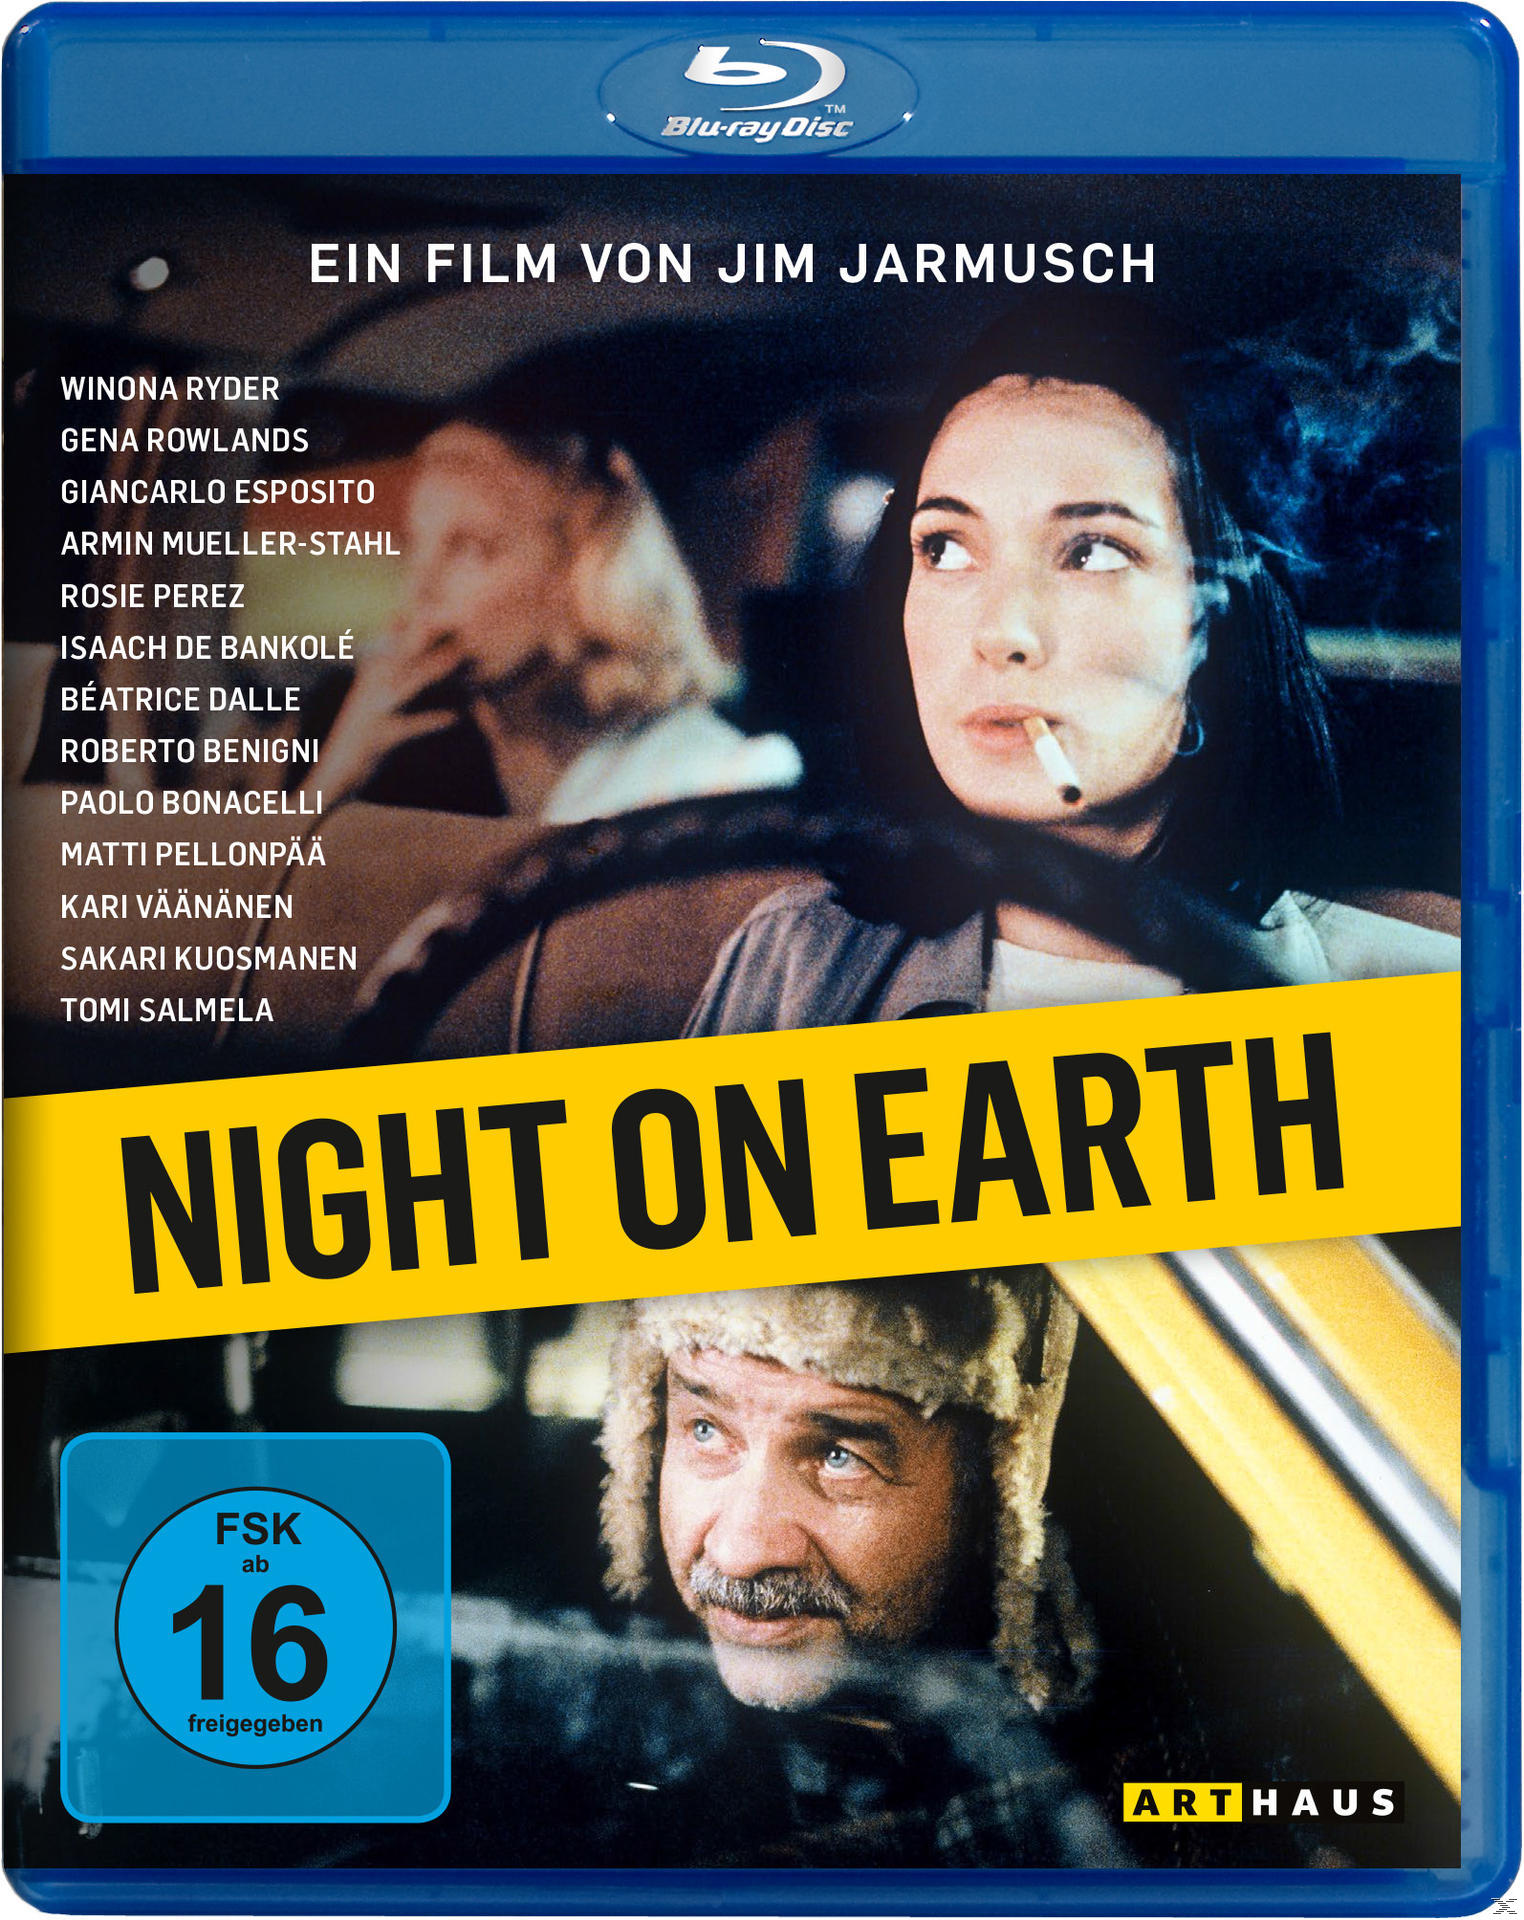 Night Blu-ray on Earth